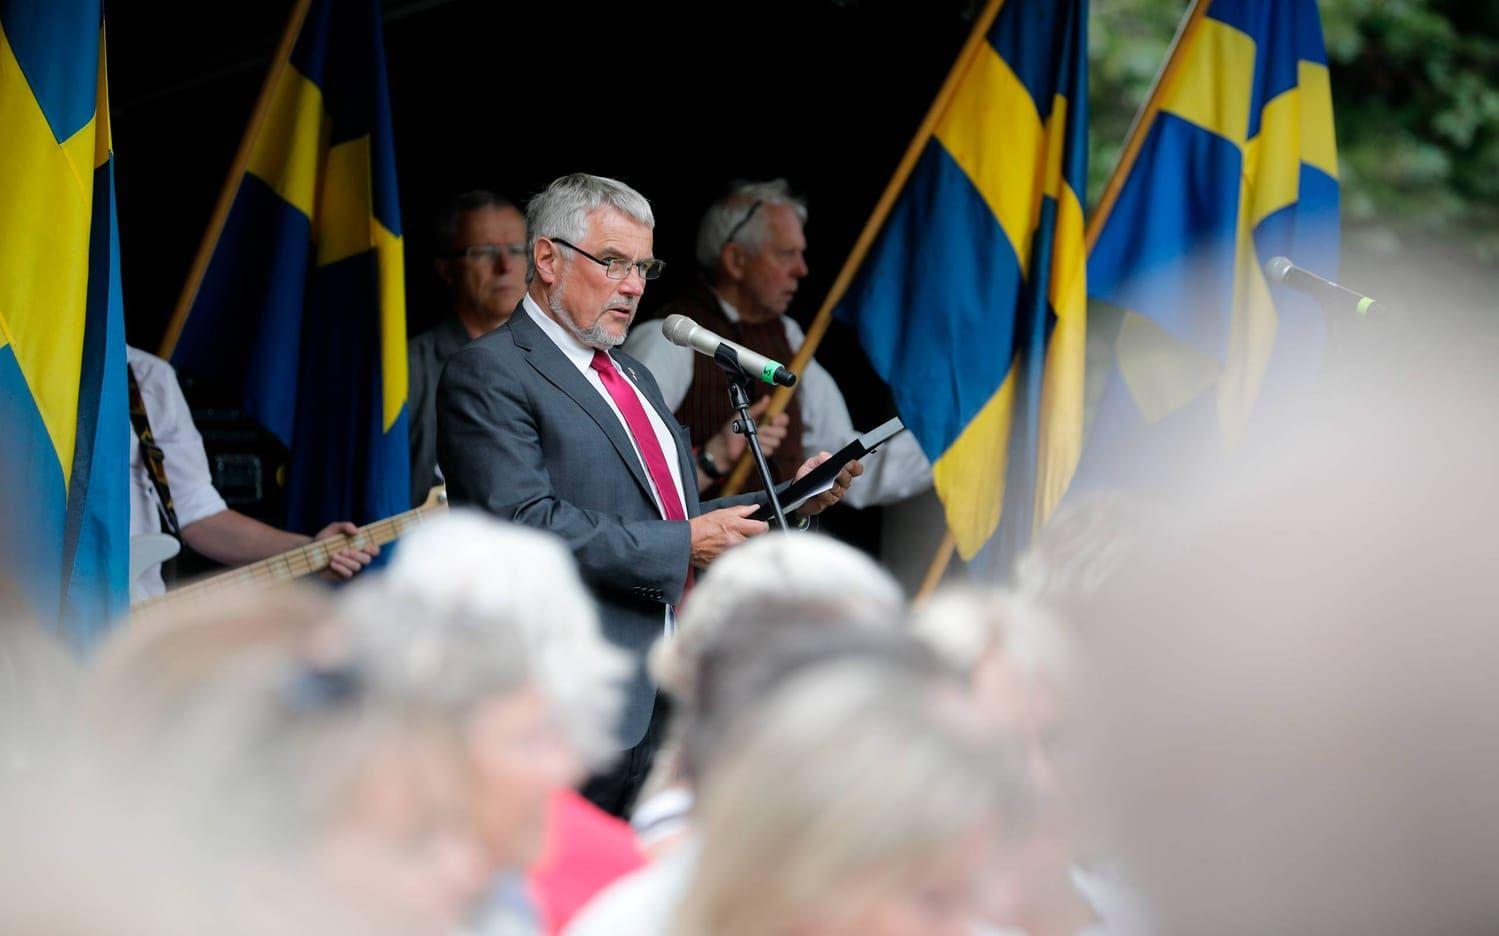 Kommunfullmäktiges ordförande Alf Gillberg (S) delade ut demokratipriset till Uddevalla judoklubb samt en flagga till Svenska jägareförbundet.